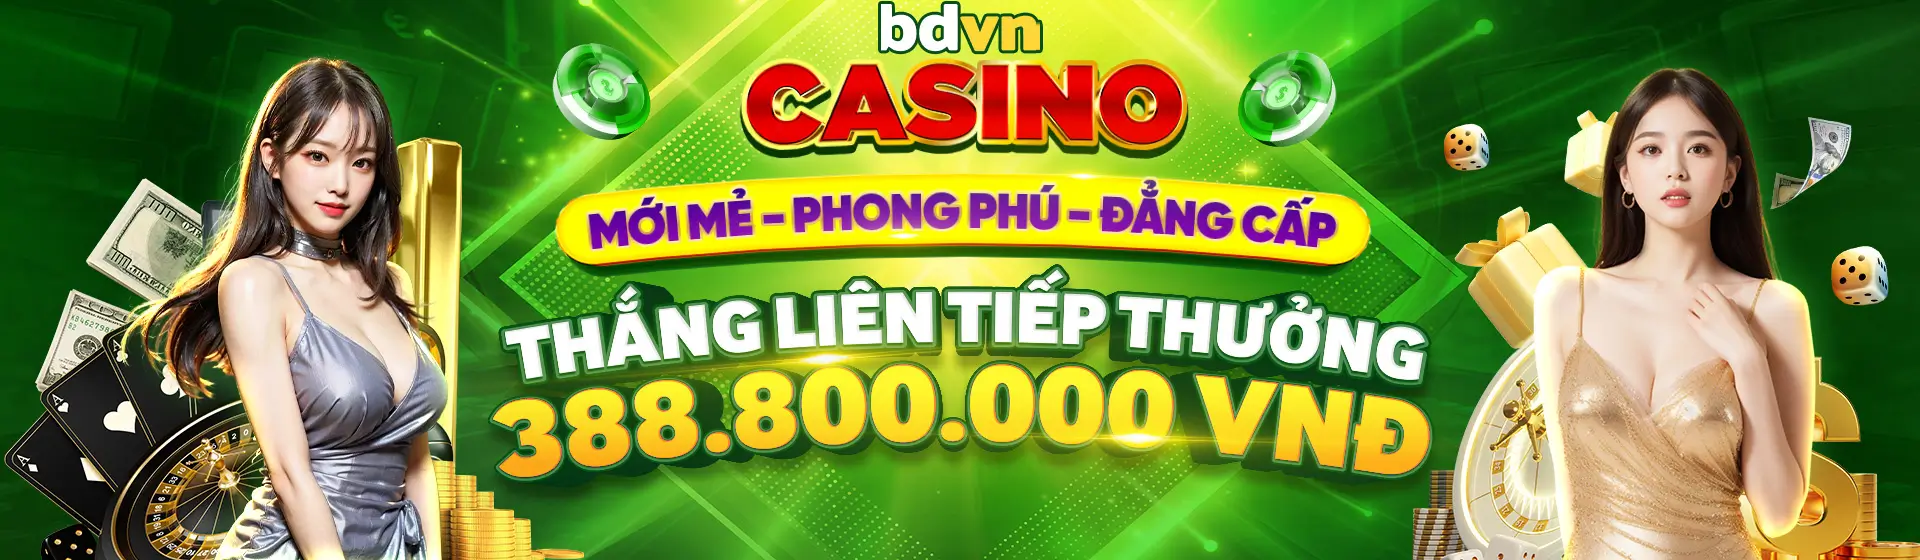 banner bdvn casino thang lien tiep thuong